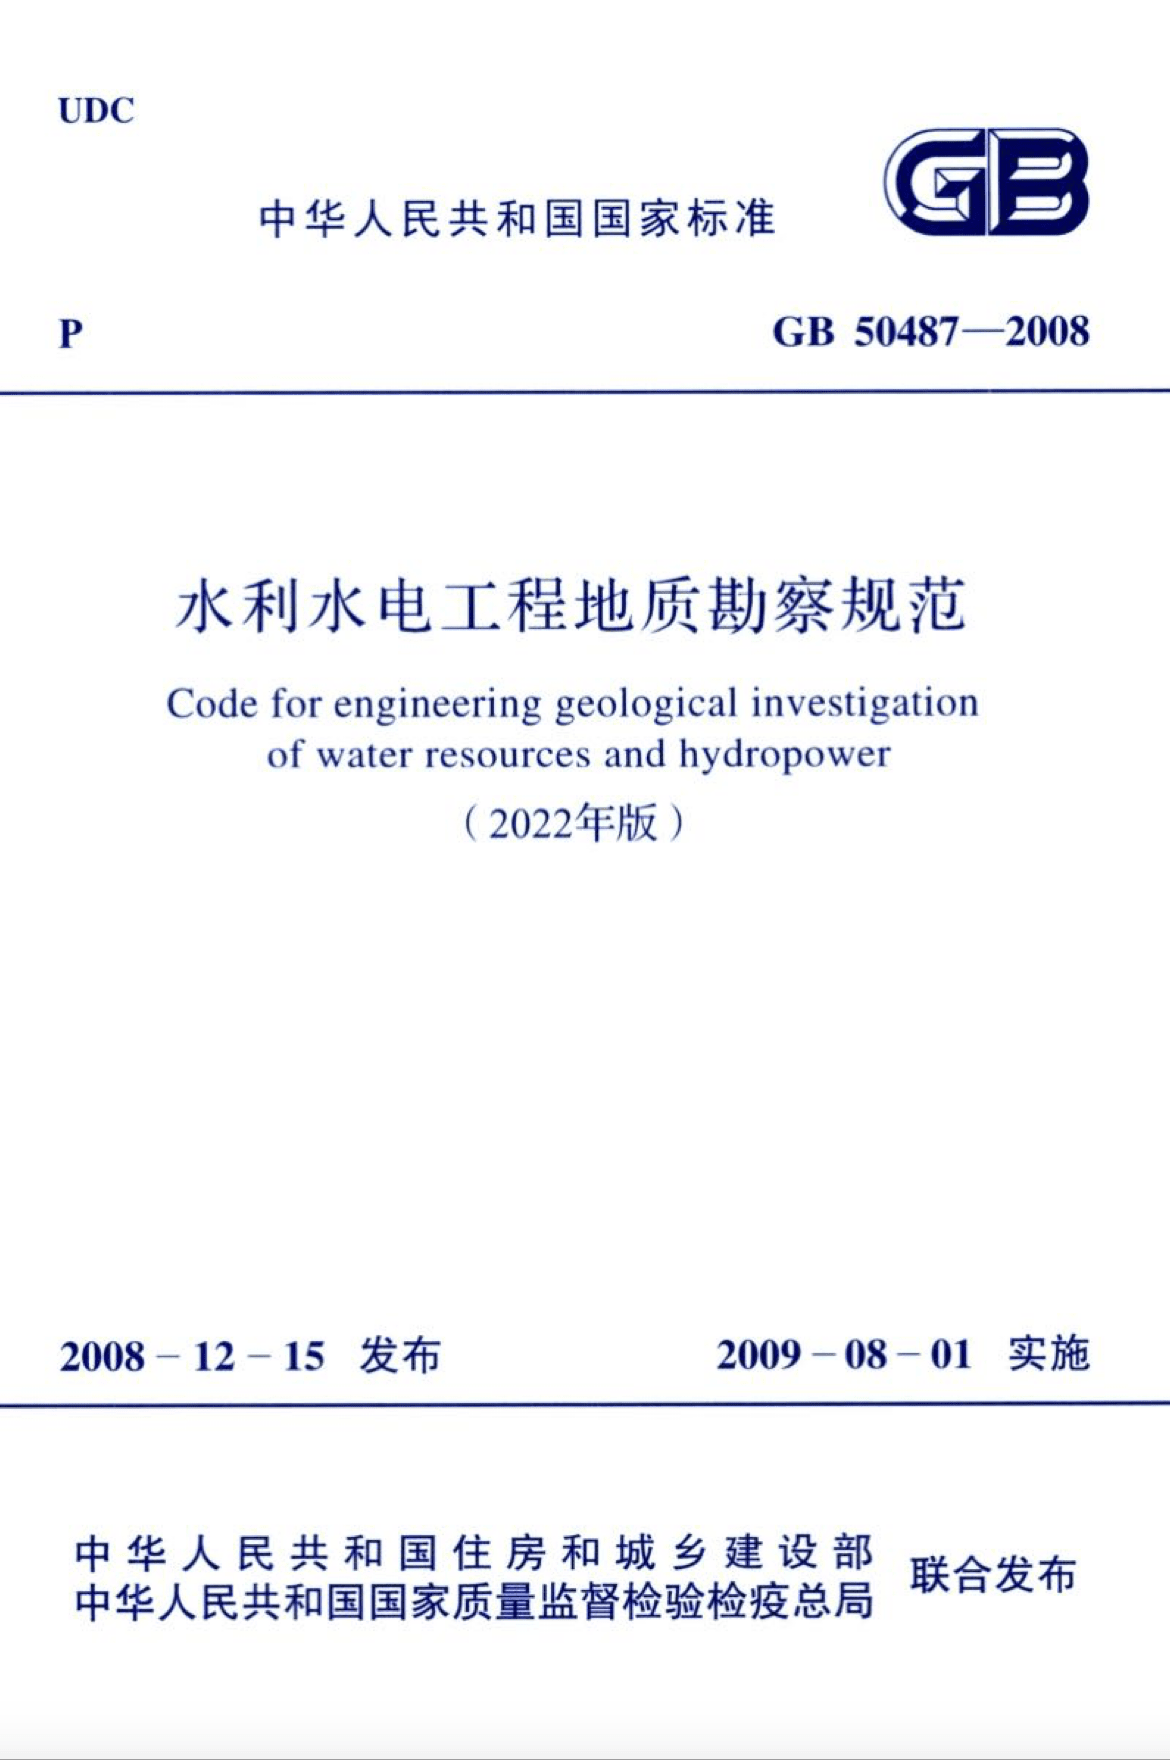 GB 50487-2008 (2022年版) 水利水电工程地质勘察规范